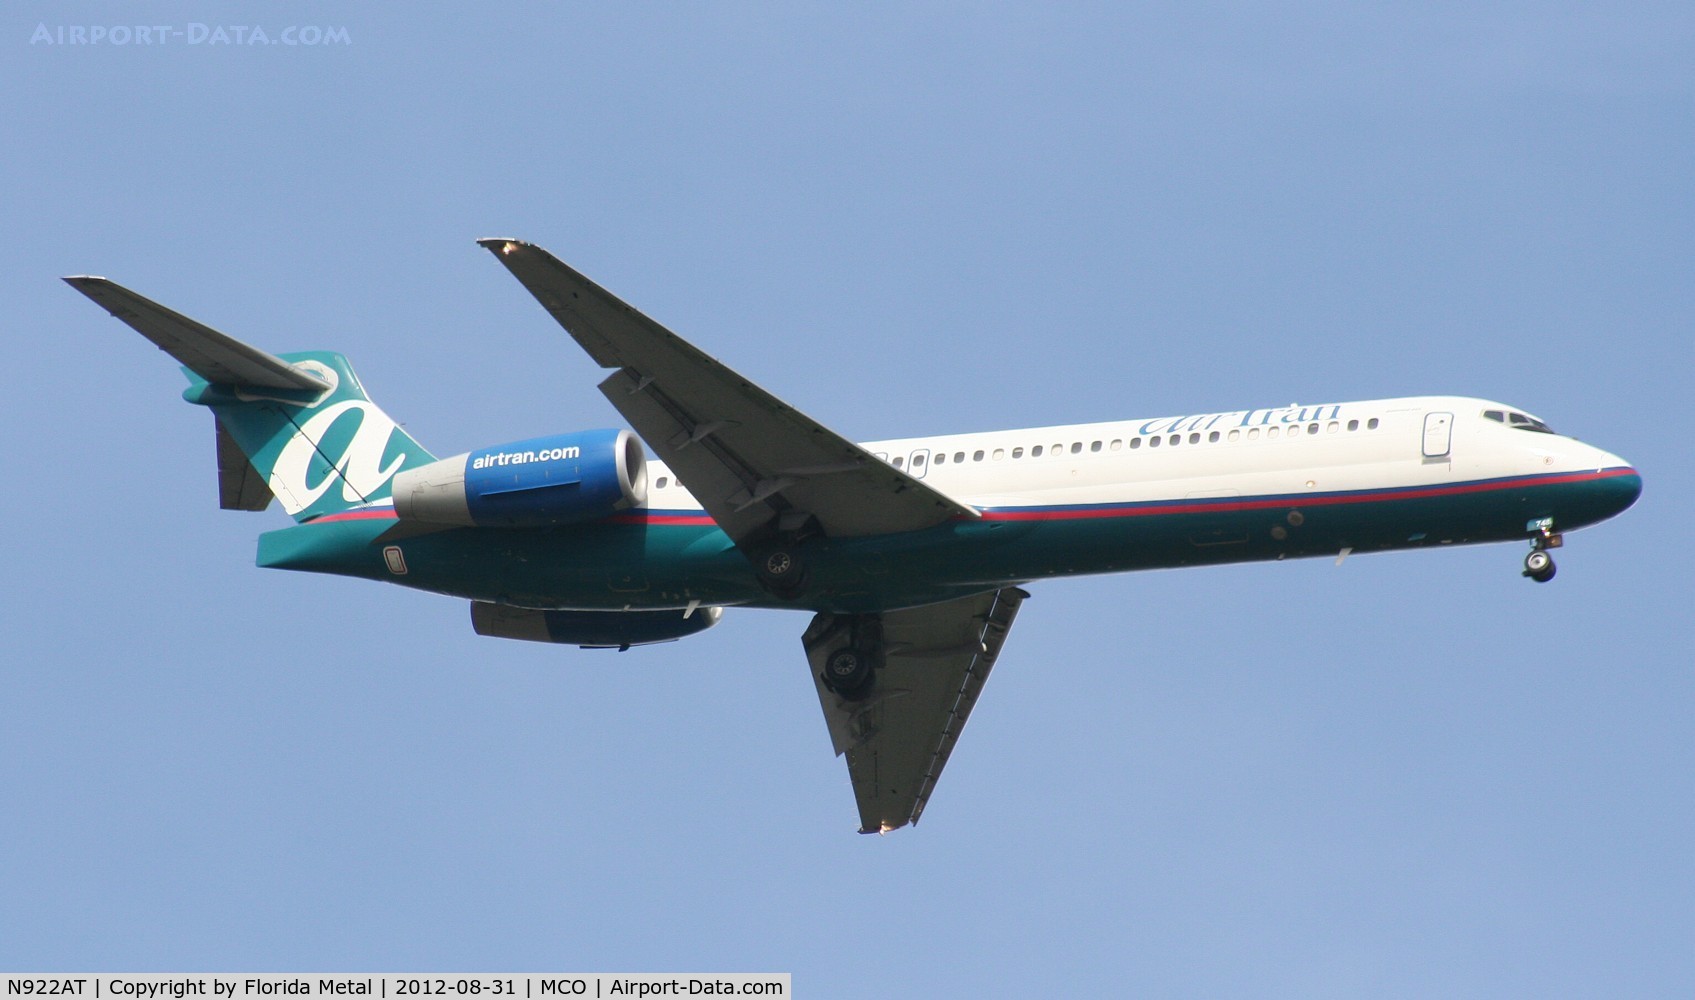 N922AT, 2005 Boeing 717-200 C/N 55050, Air Tran 717